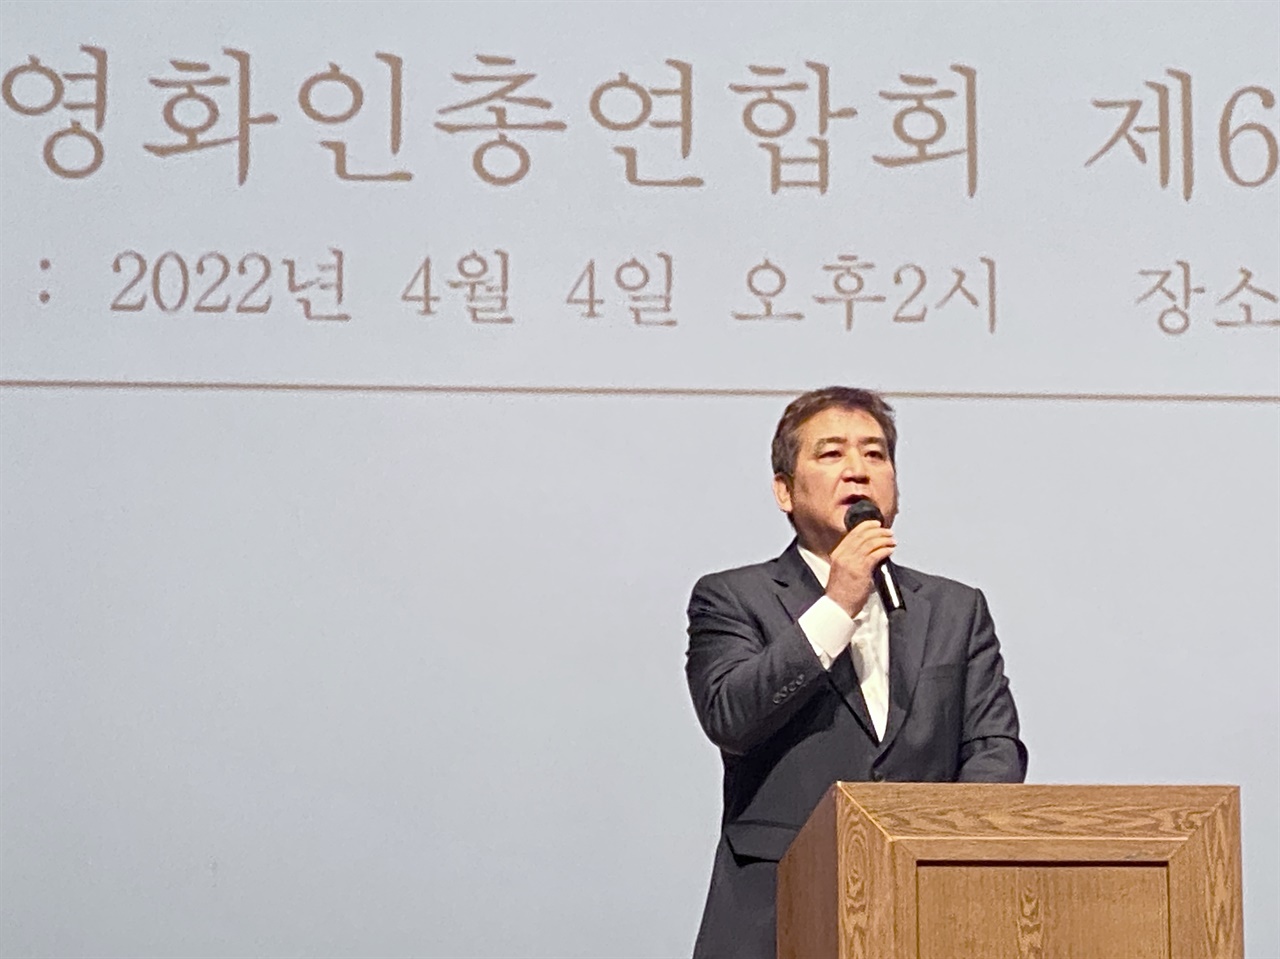  4일 한국영화인총연합회 신임 이사장으로 선출된 양윤호 감독.